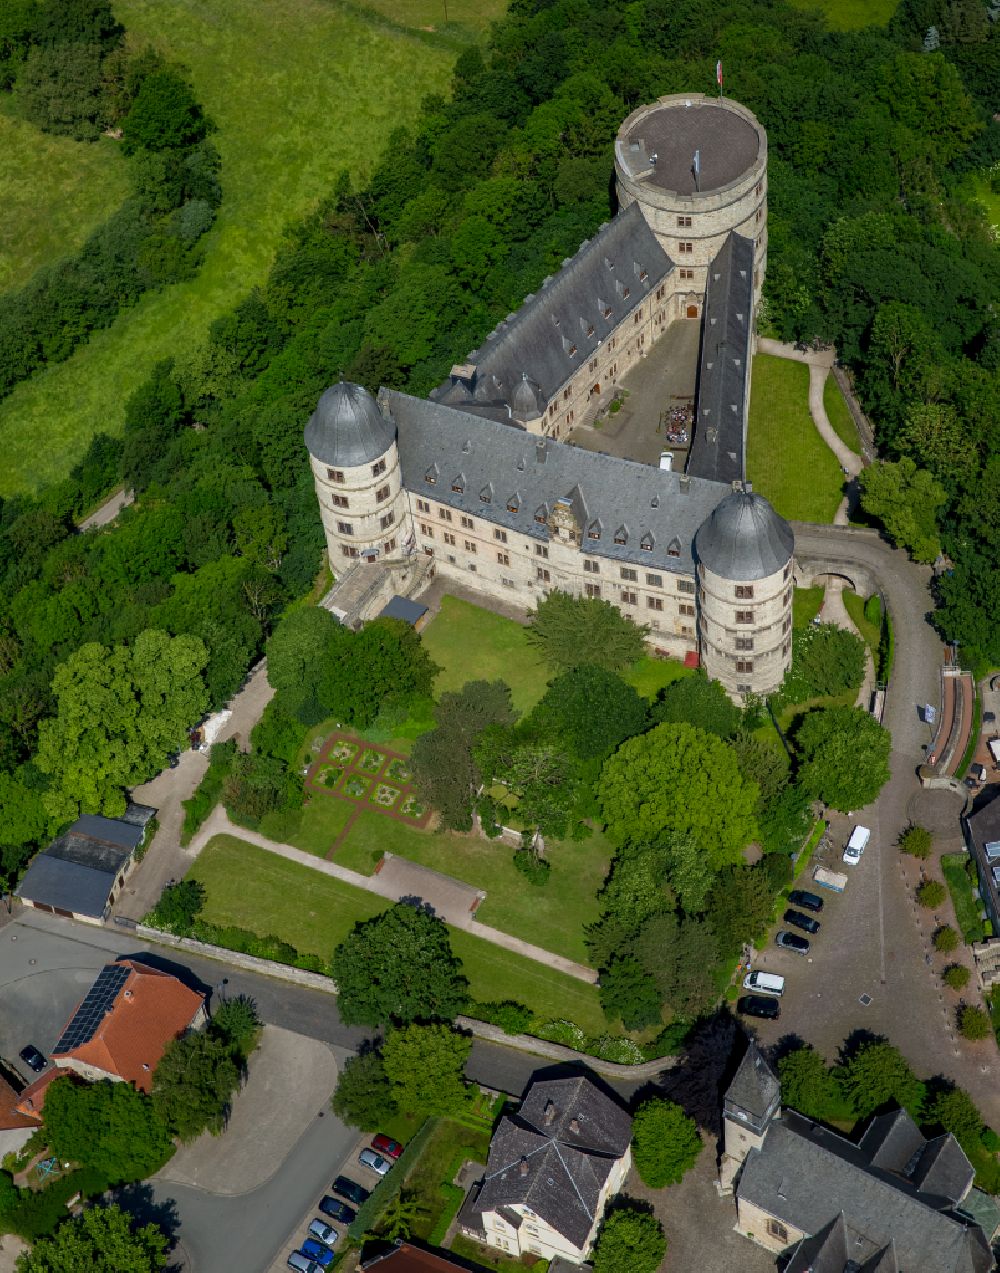 Büren von oben - Burganlage der Veste Wewelsburg am Burgwall in Büren im Bundesland Nordrhein-Westfalen